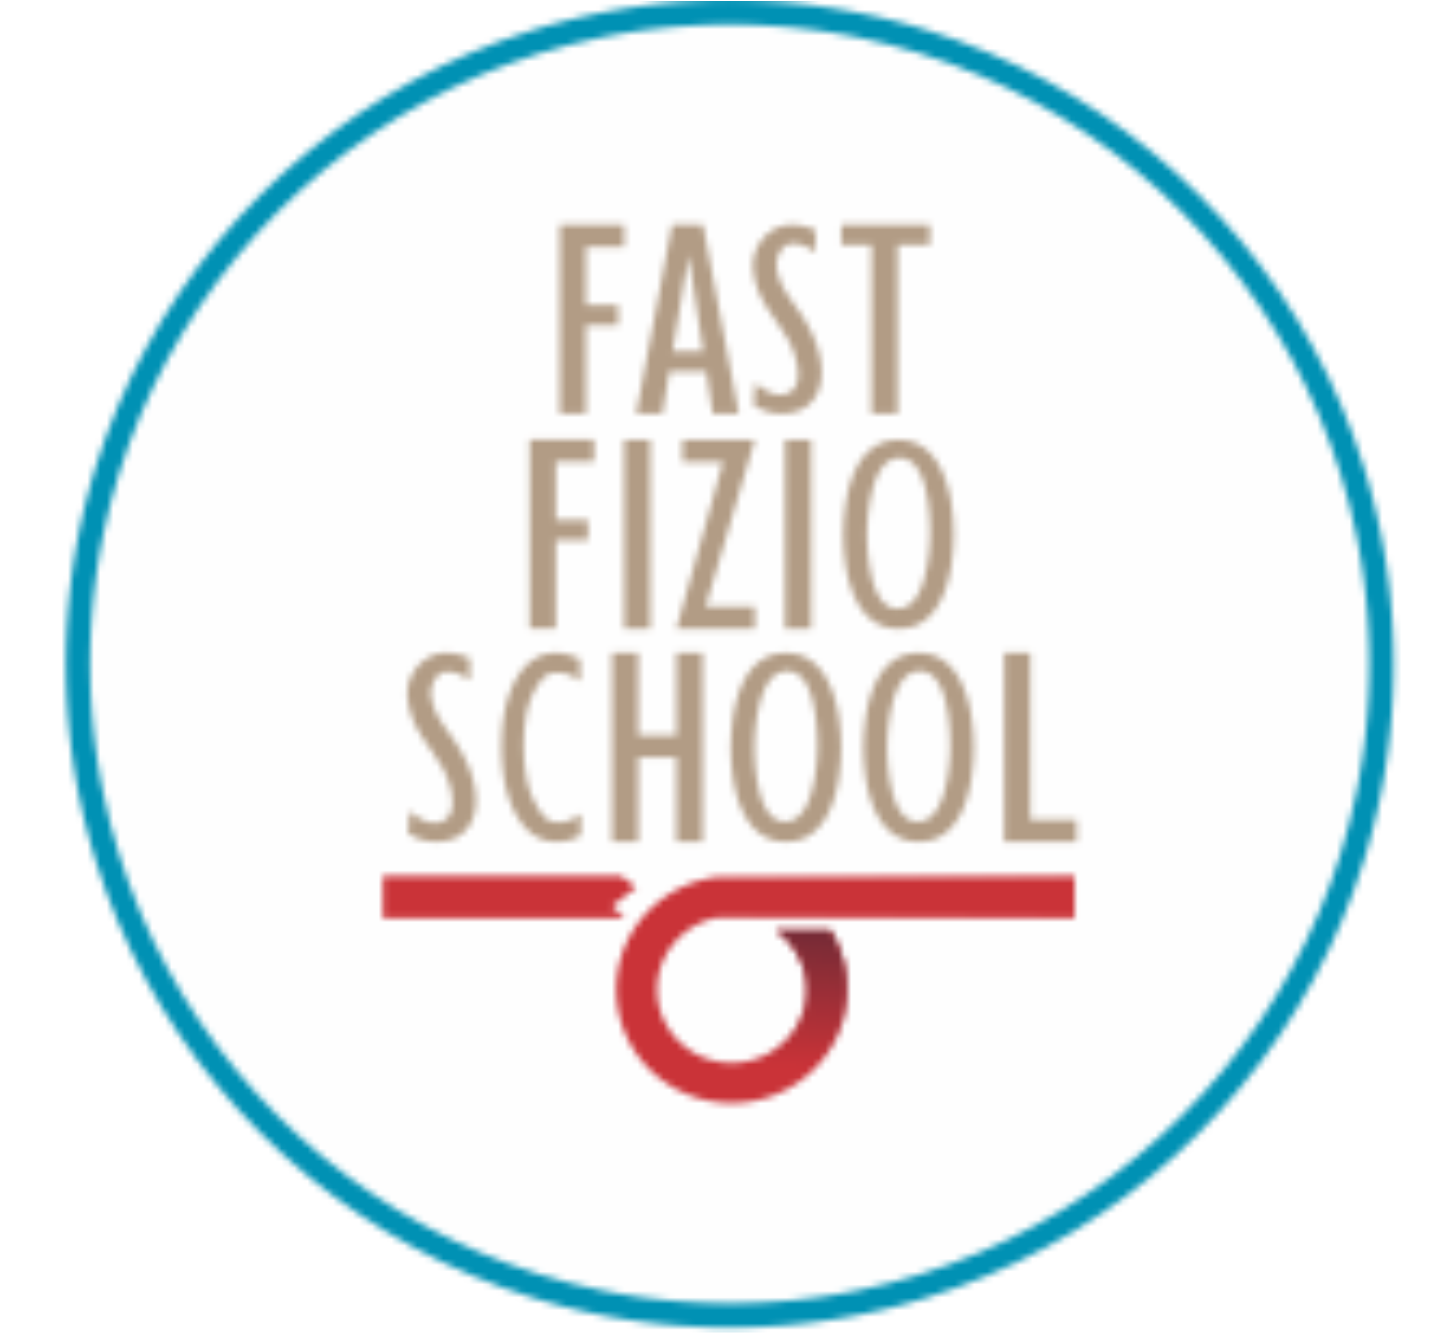 Fast Fizio School